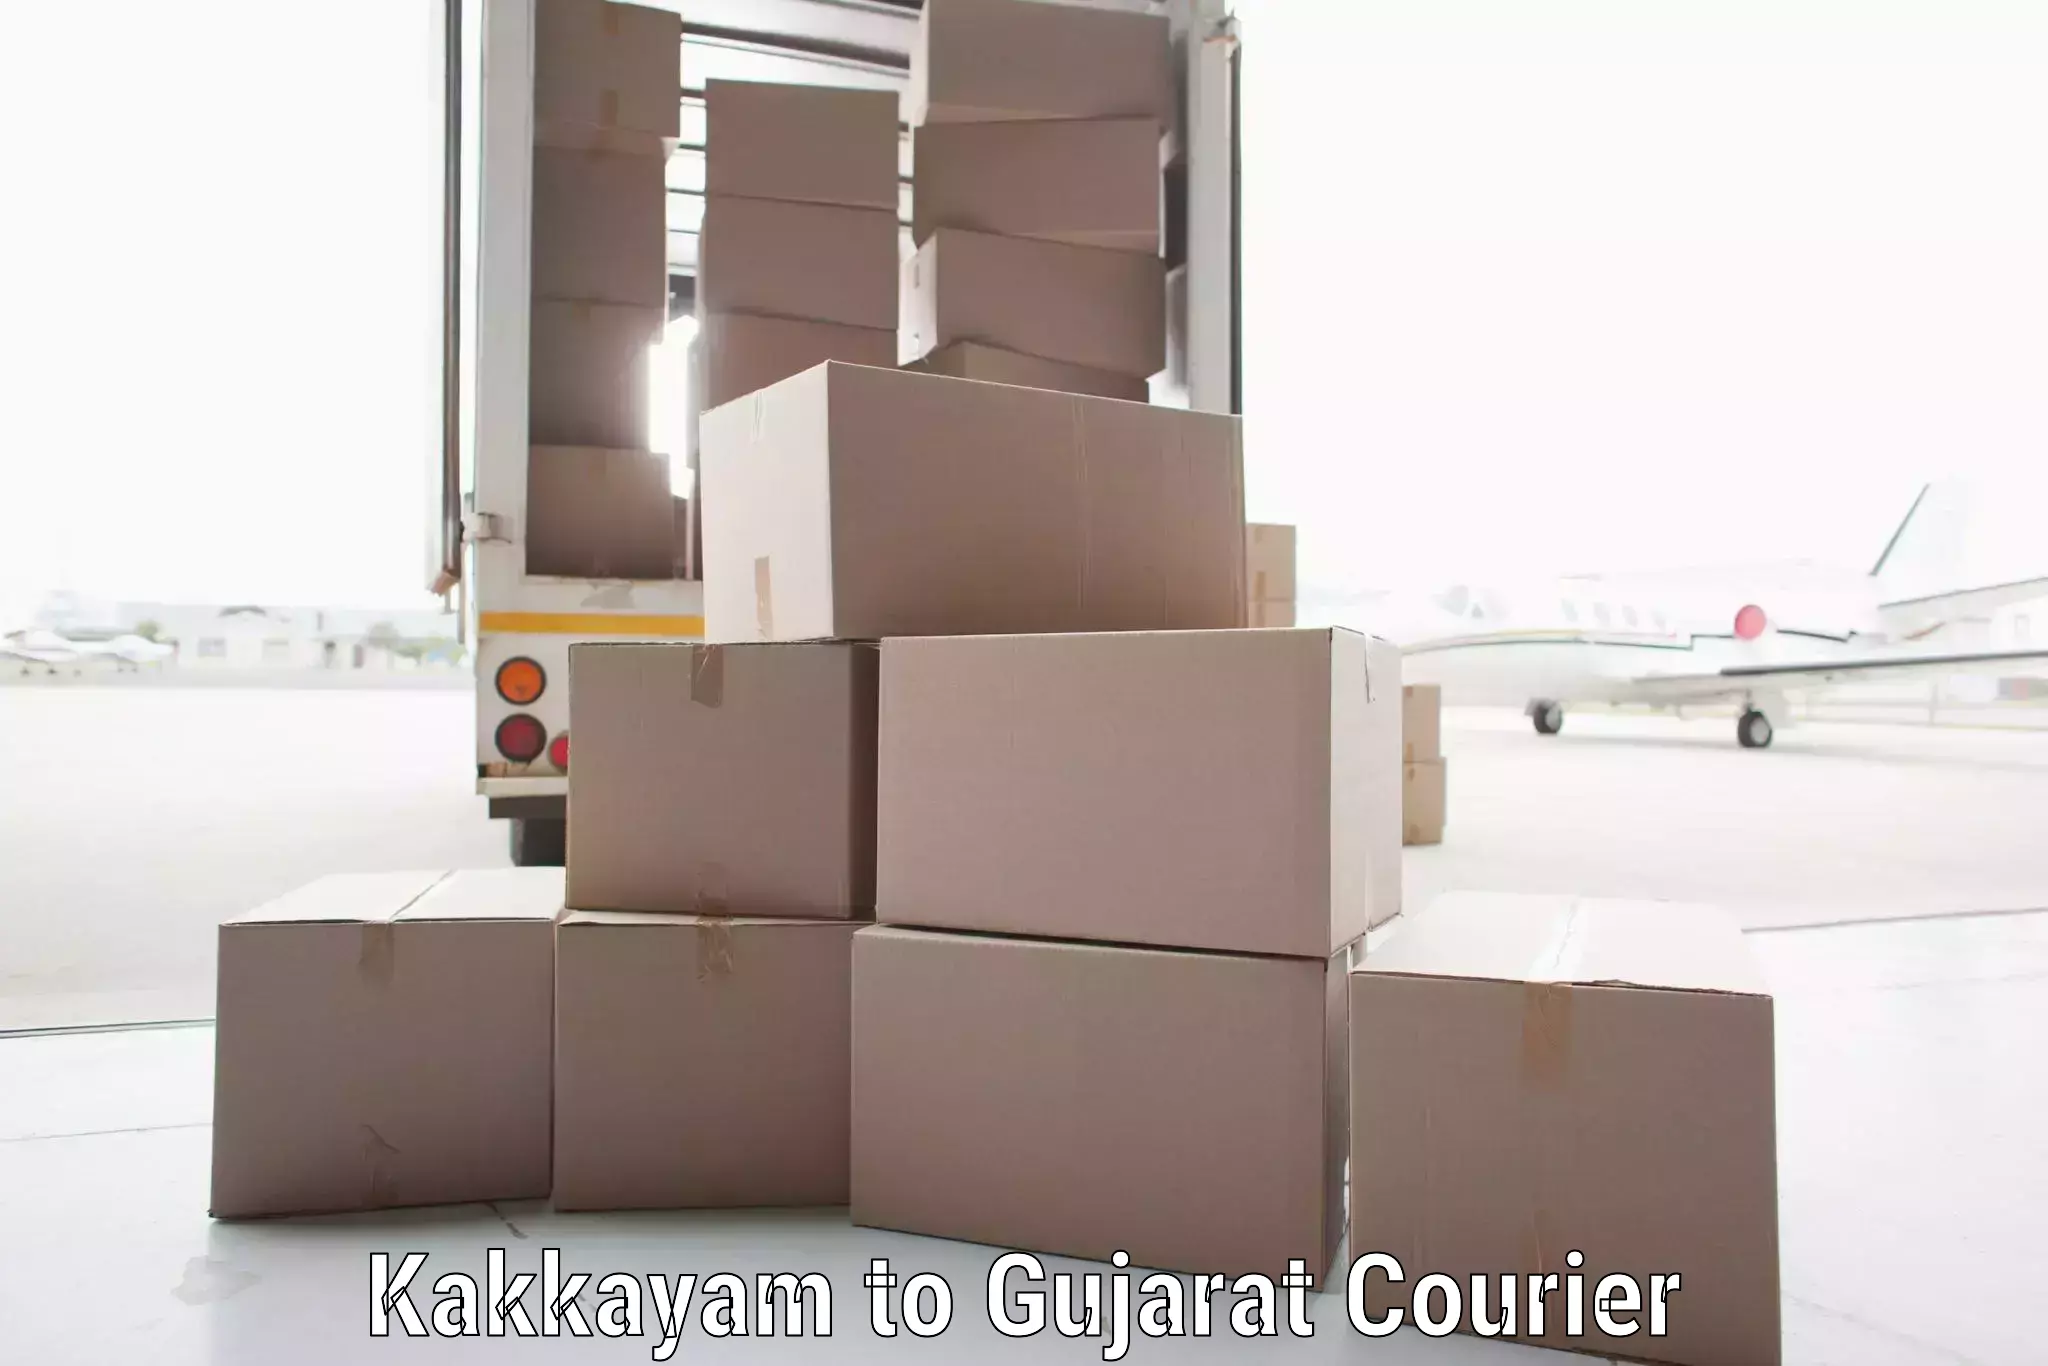 Delivery service partnership Kakkayam to IIT Gandhi Nagar